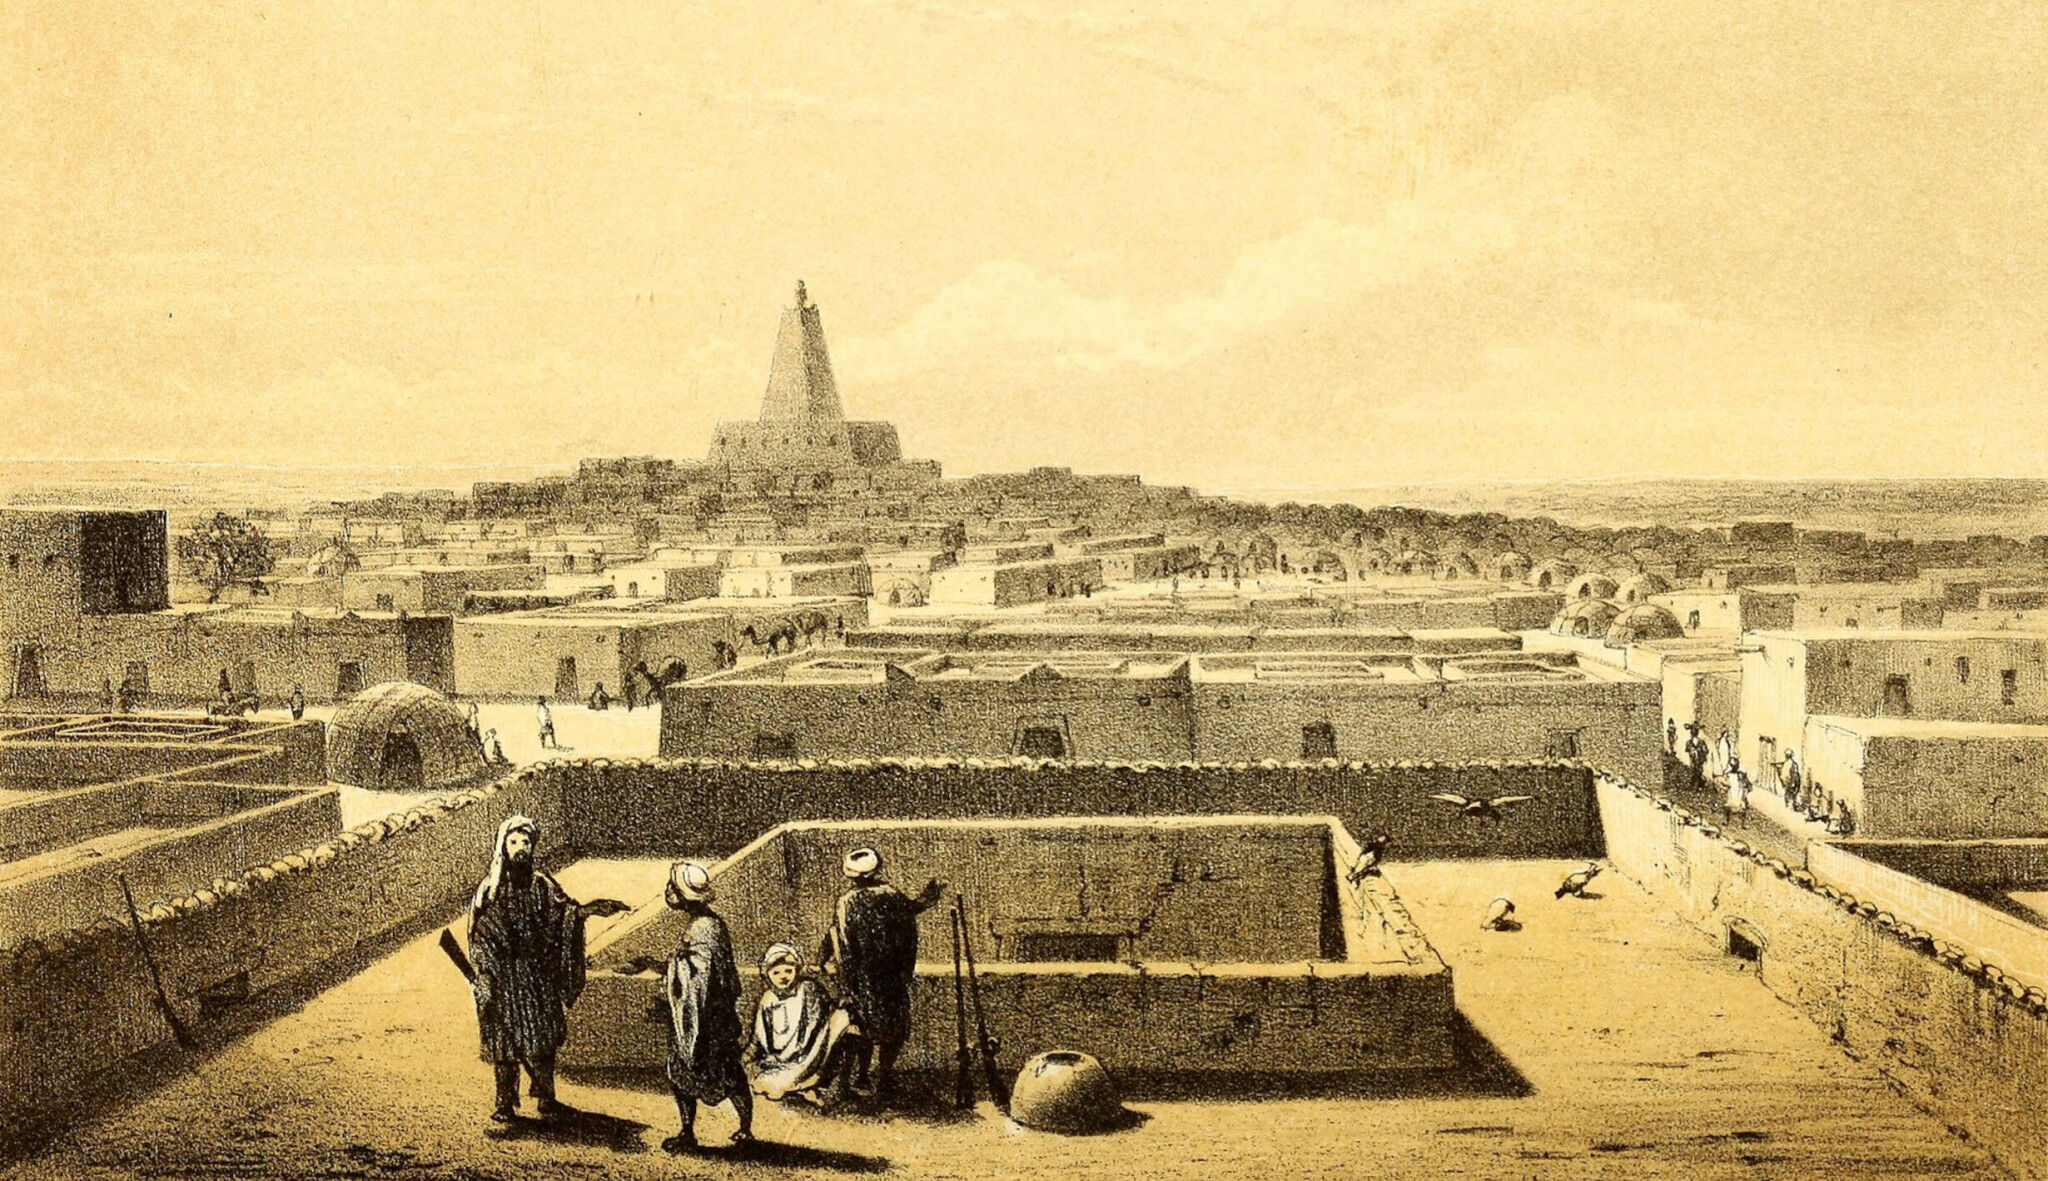 Vidět Timbuktu a zemřít. Skotský dobrodruh místo zlata našel jen bídu